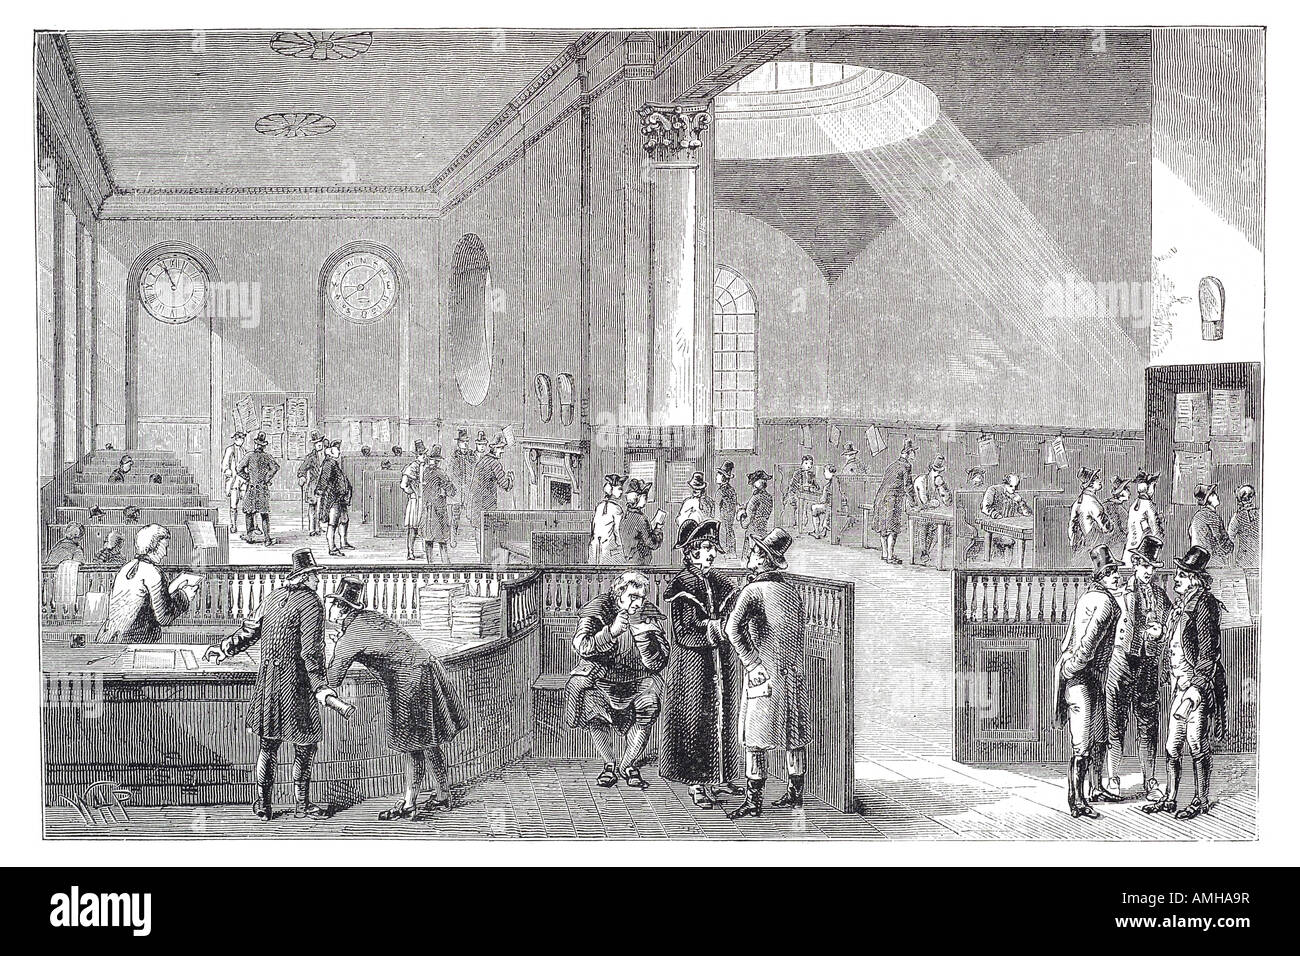 1830 Prix de souscription de l'assurance britannique Lloyds réunion marché placer plusieurs bailleur états corporation London City ca Banque D'Images